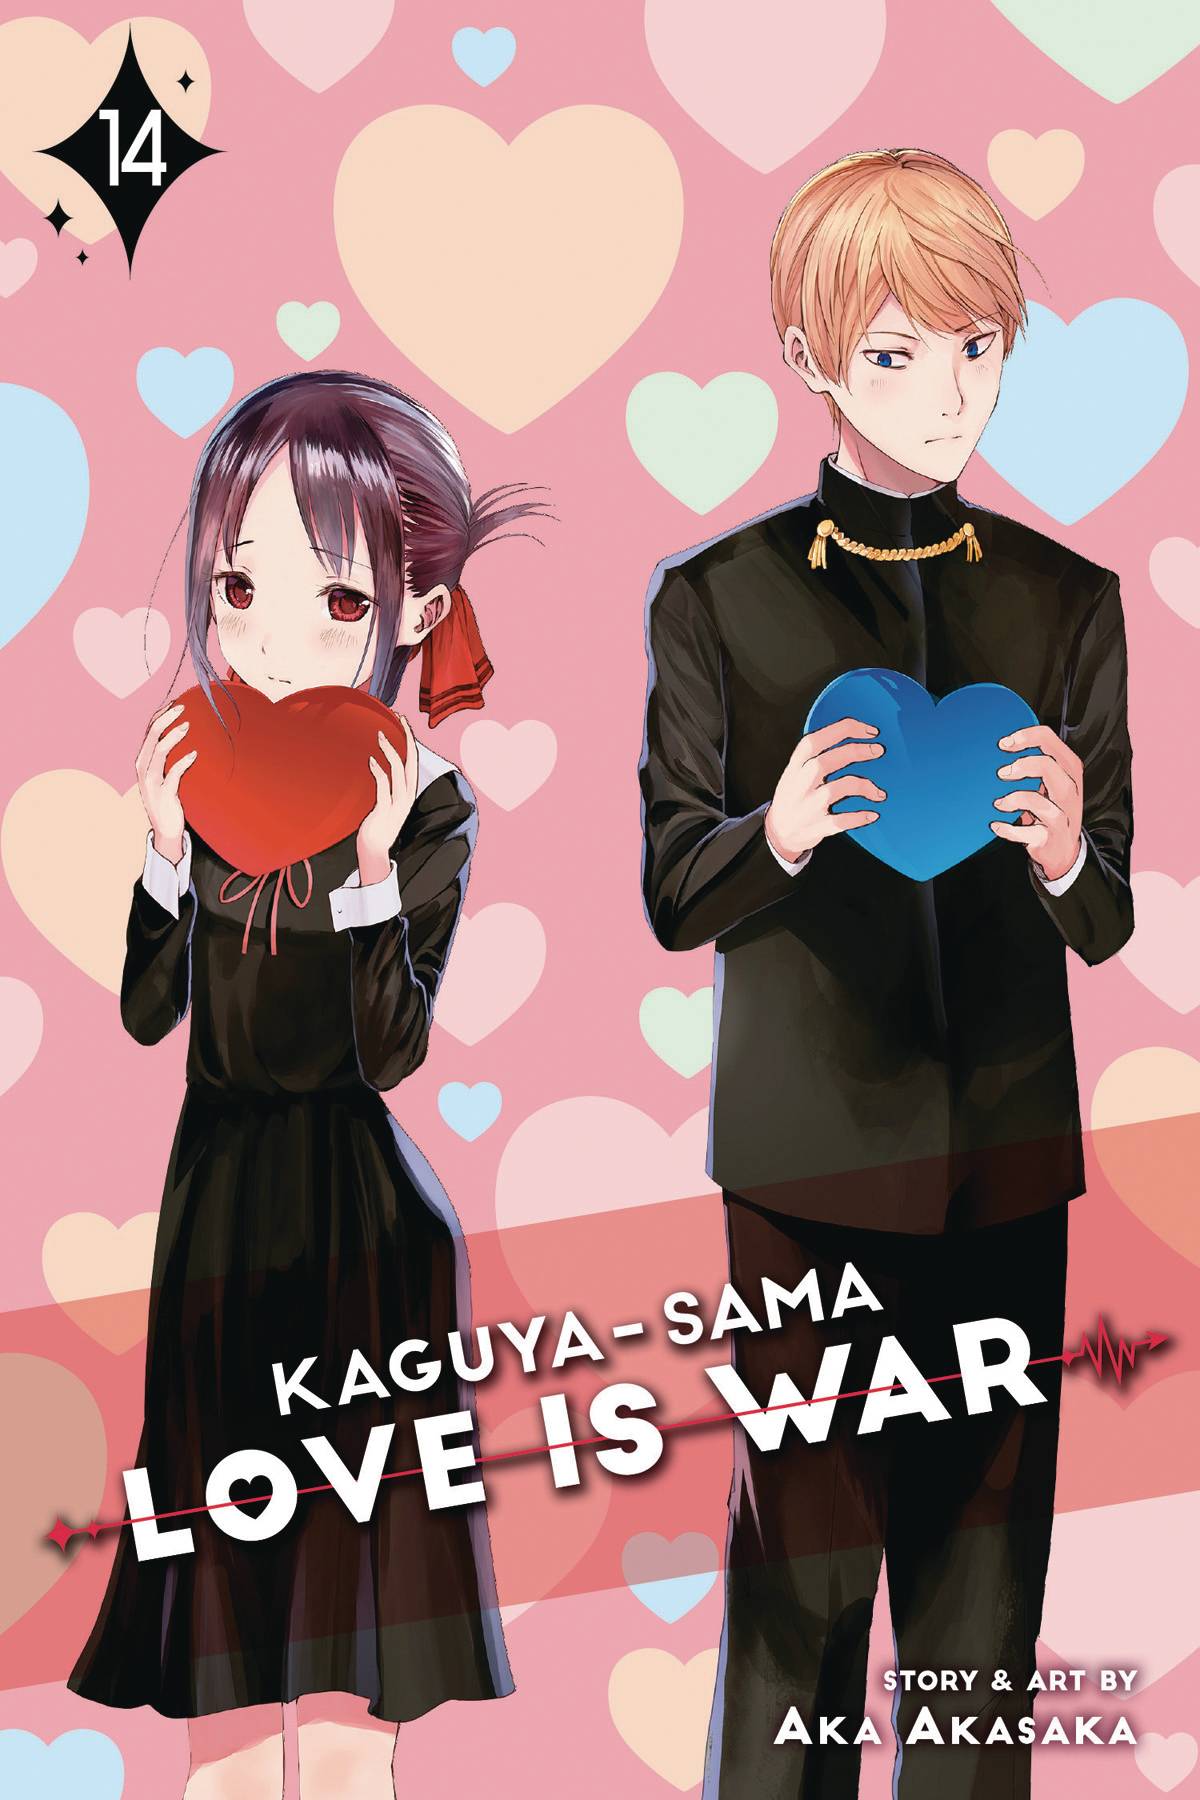 KAGUYA SAMA LOVE IS WAR GN VOL 14